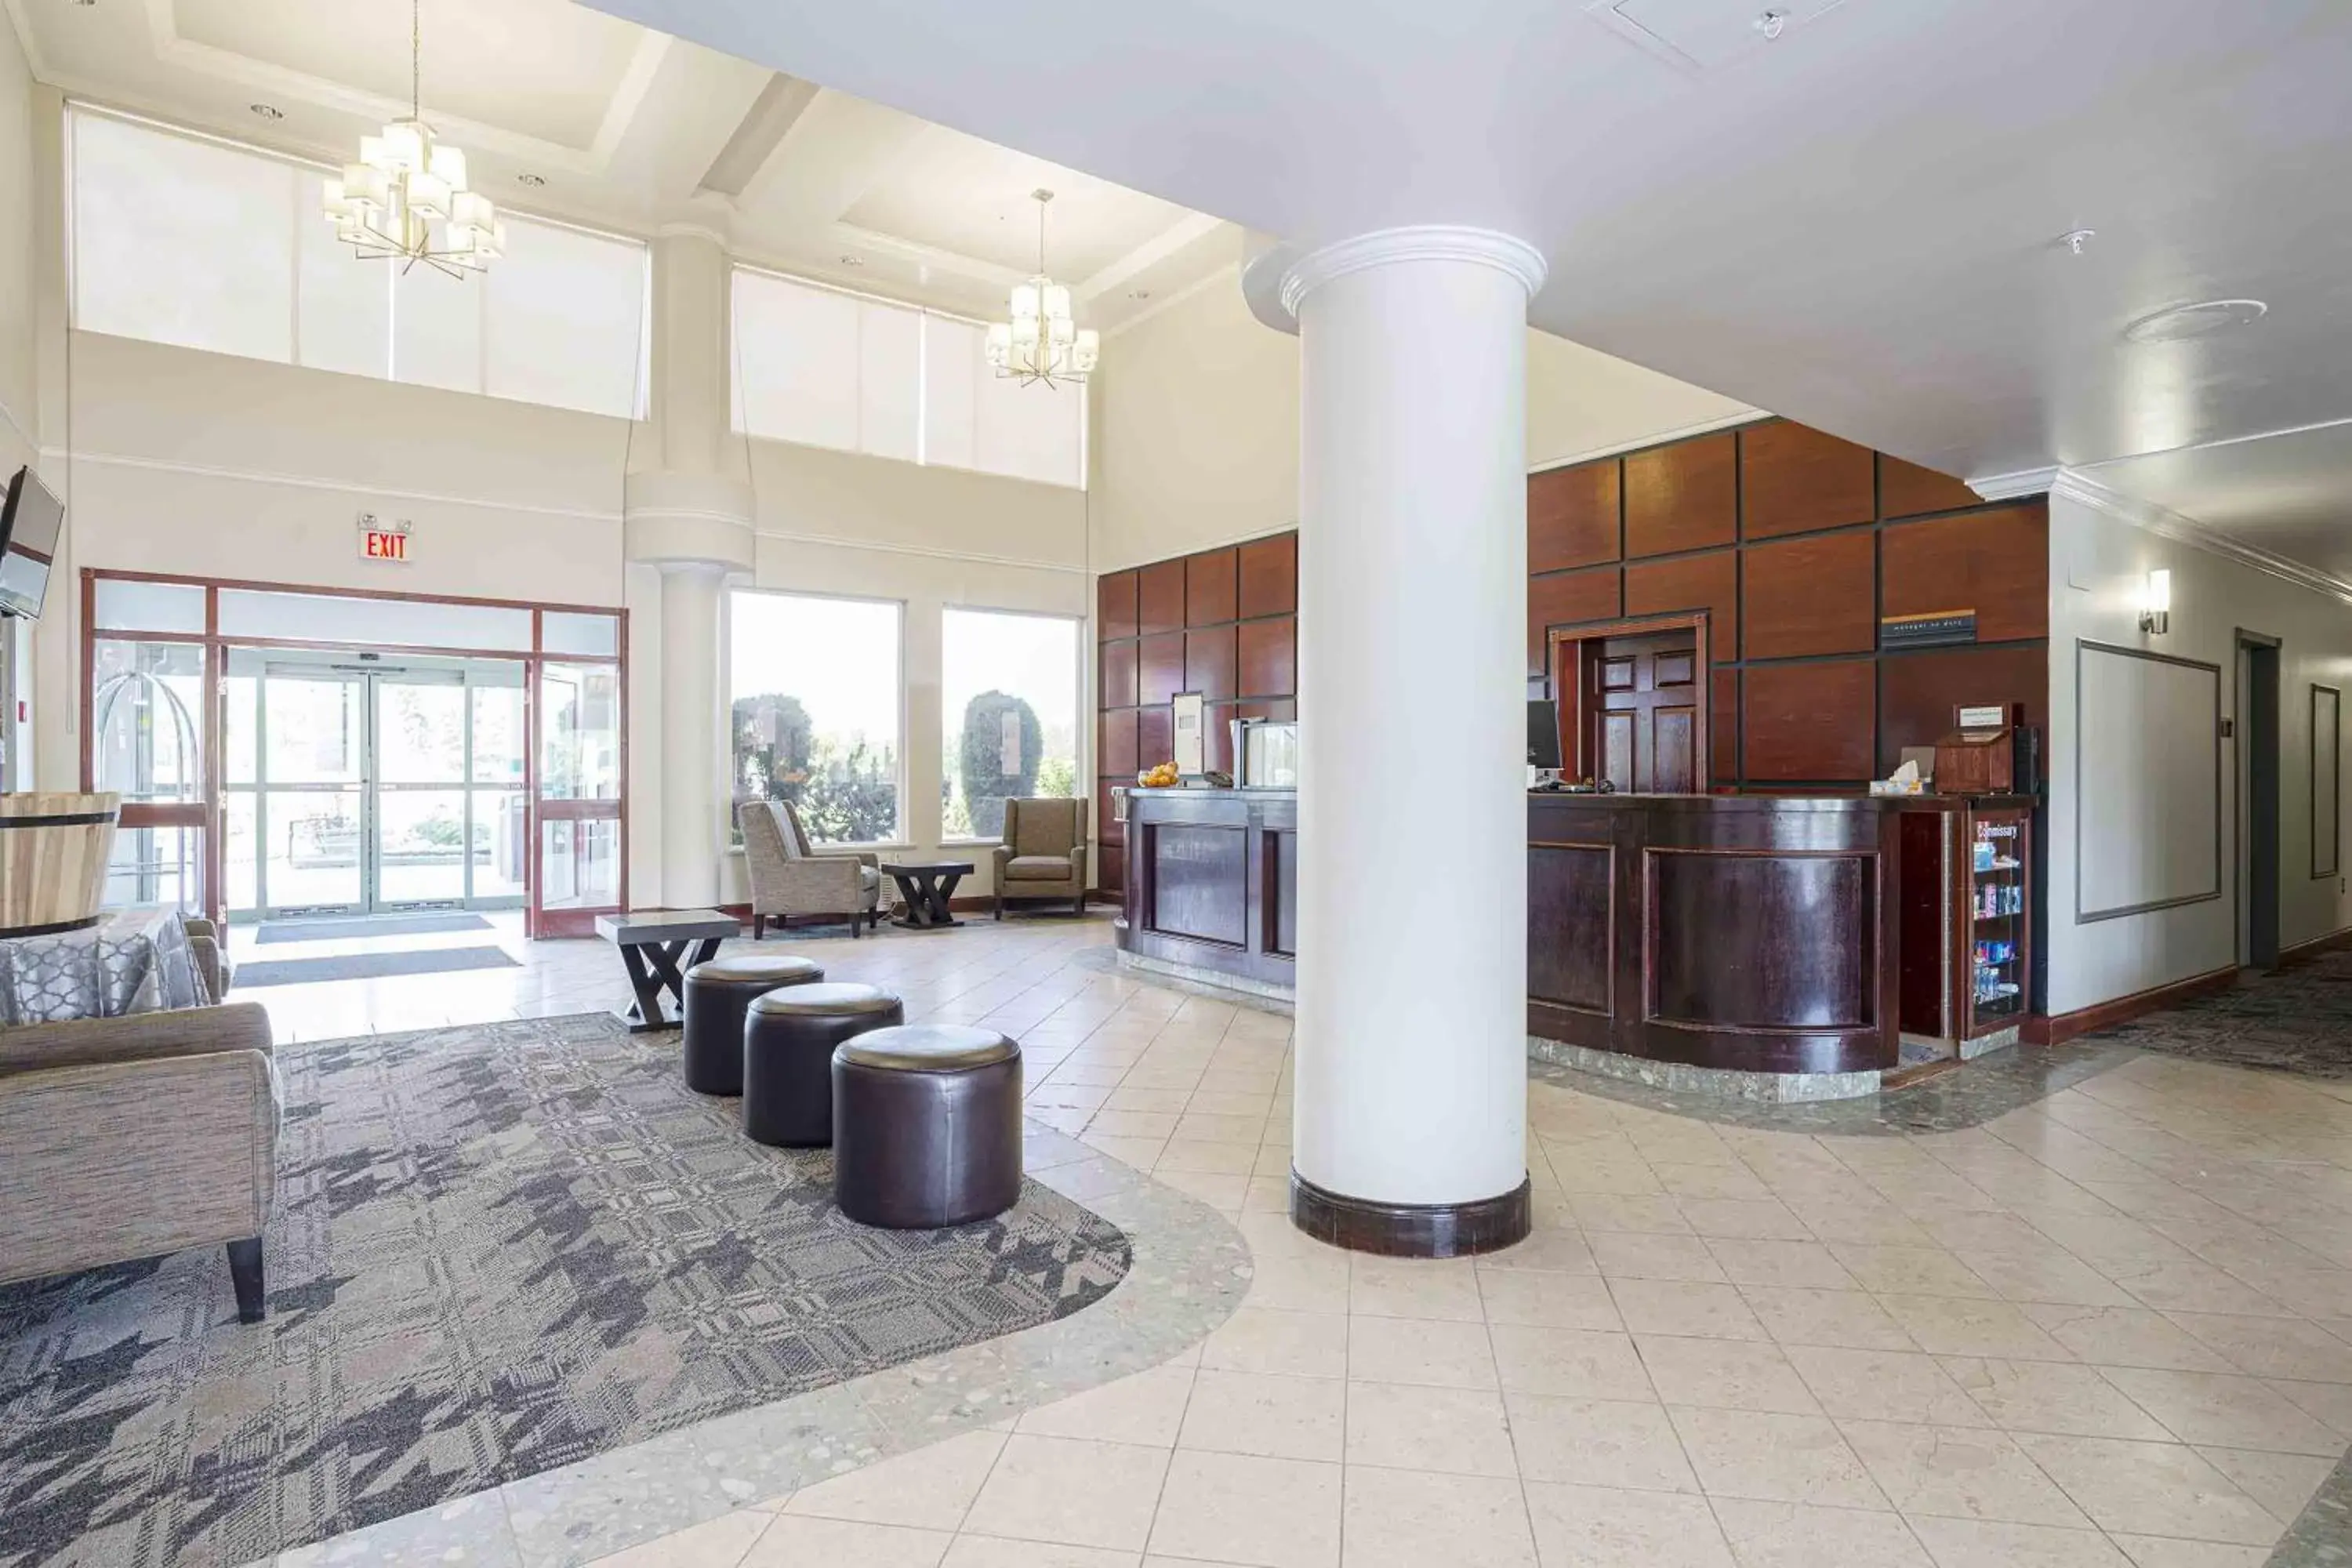 Lobby or reception, Lobby/Reception in Sandman Hotel Quesnel